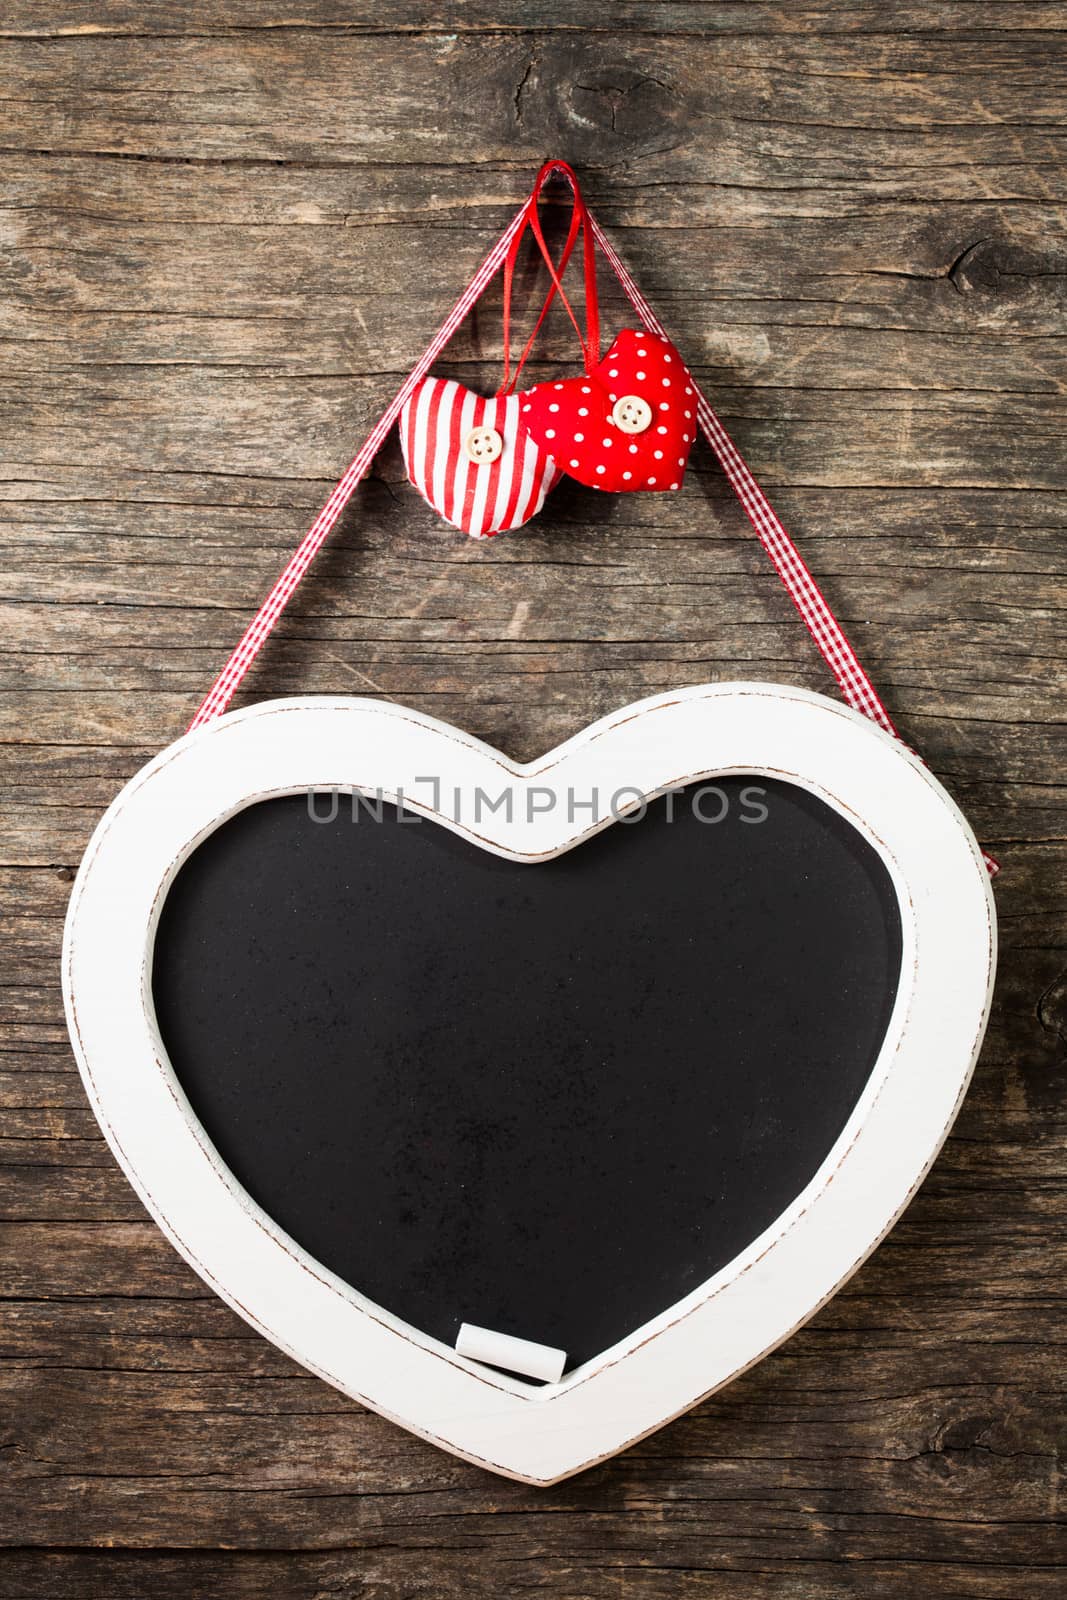 The heart shape chalkboard by oksix